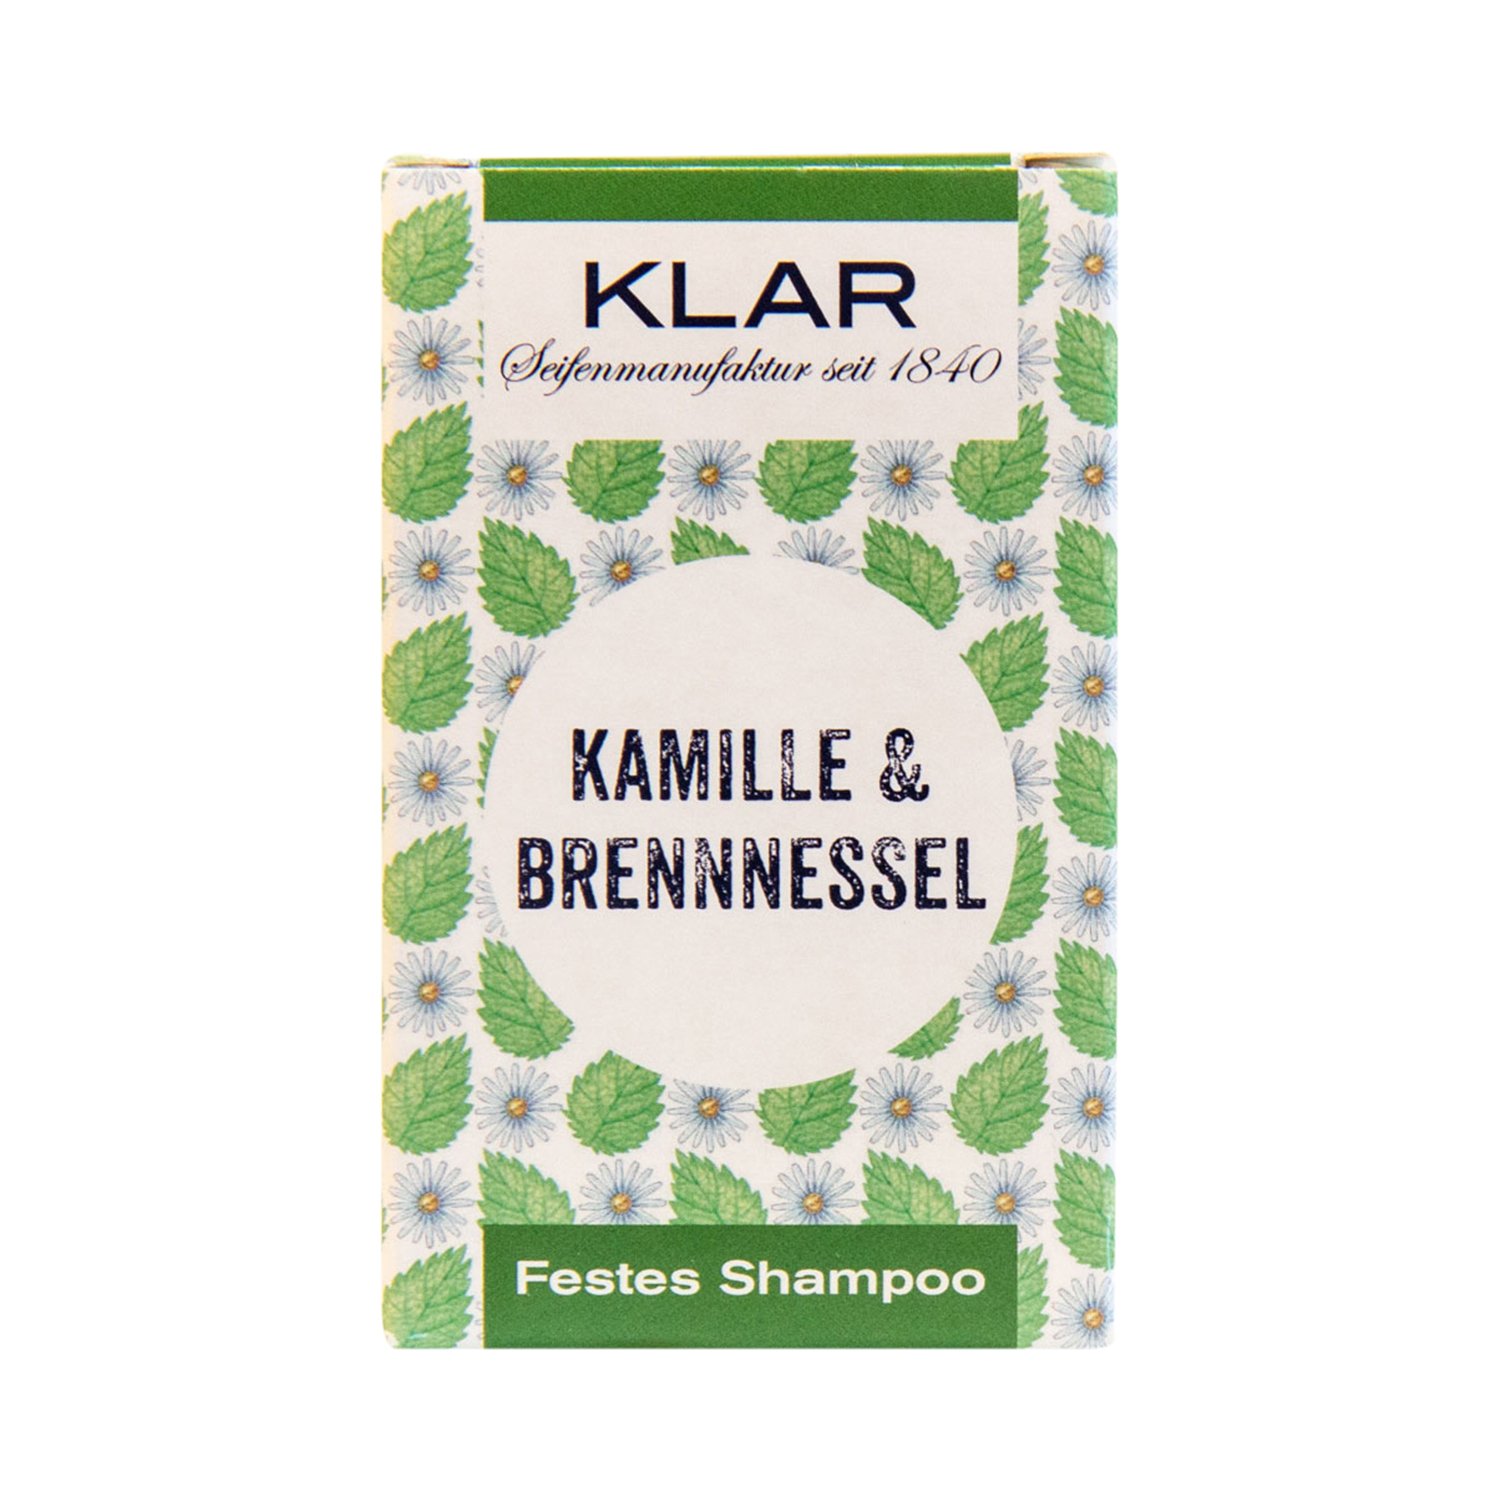 Klar's - Bar Shampoo - Kamille & Brennnessel - festes Shampoo - Haarseife für störrisches Haar